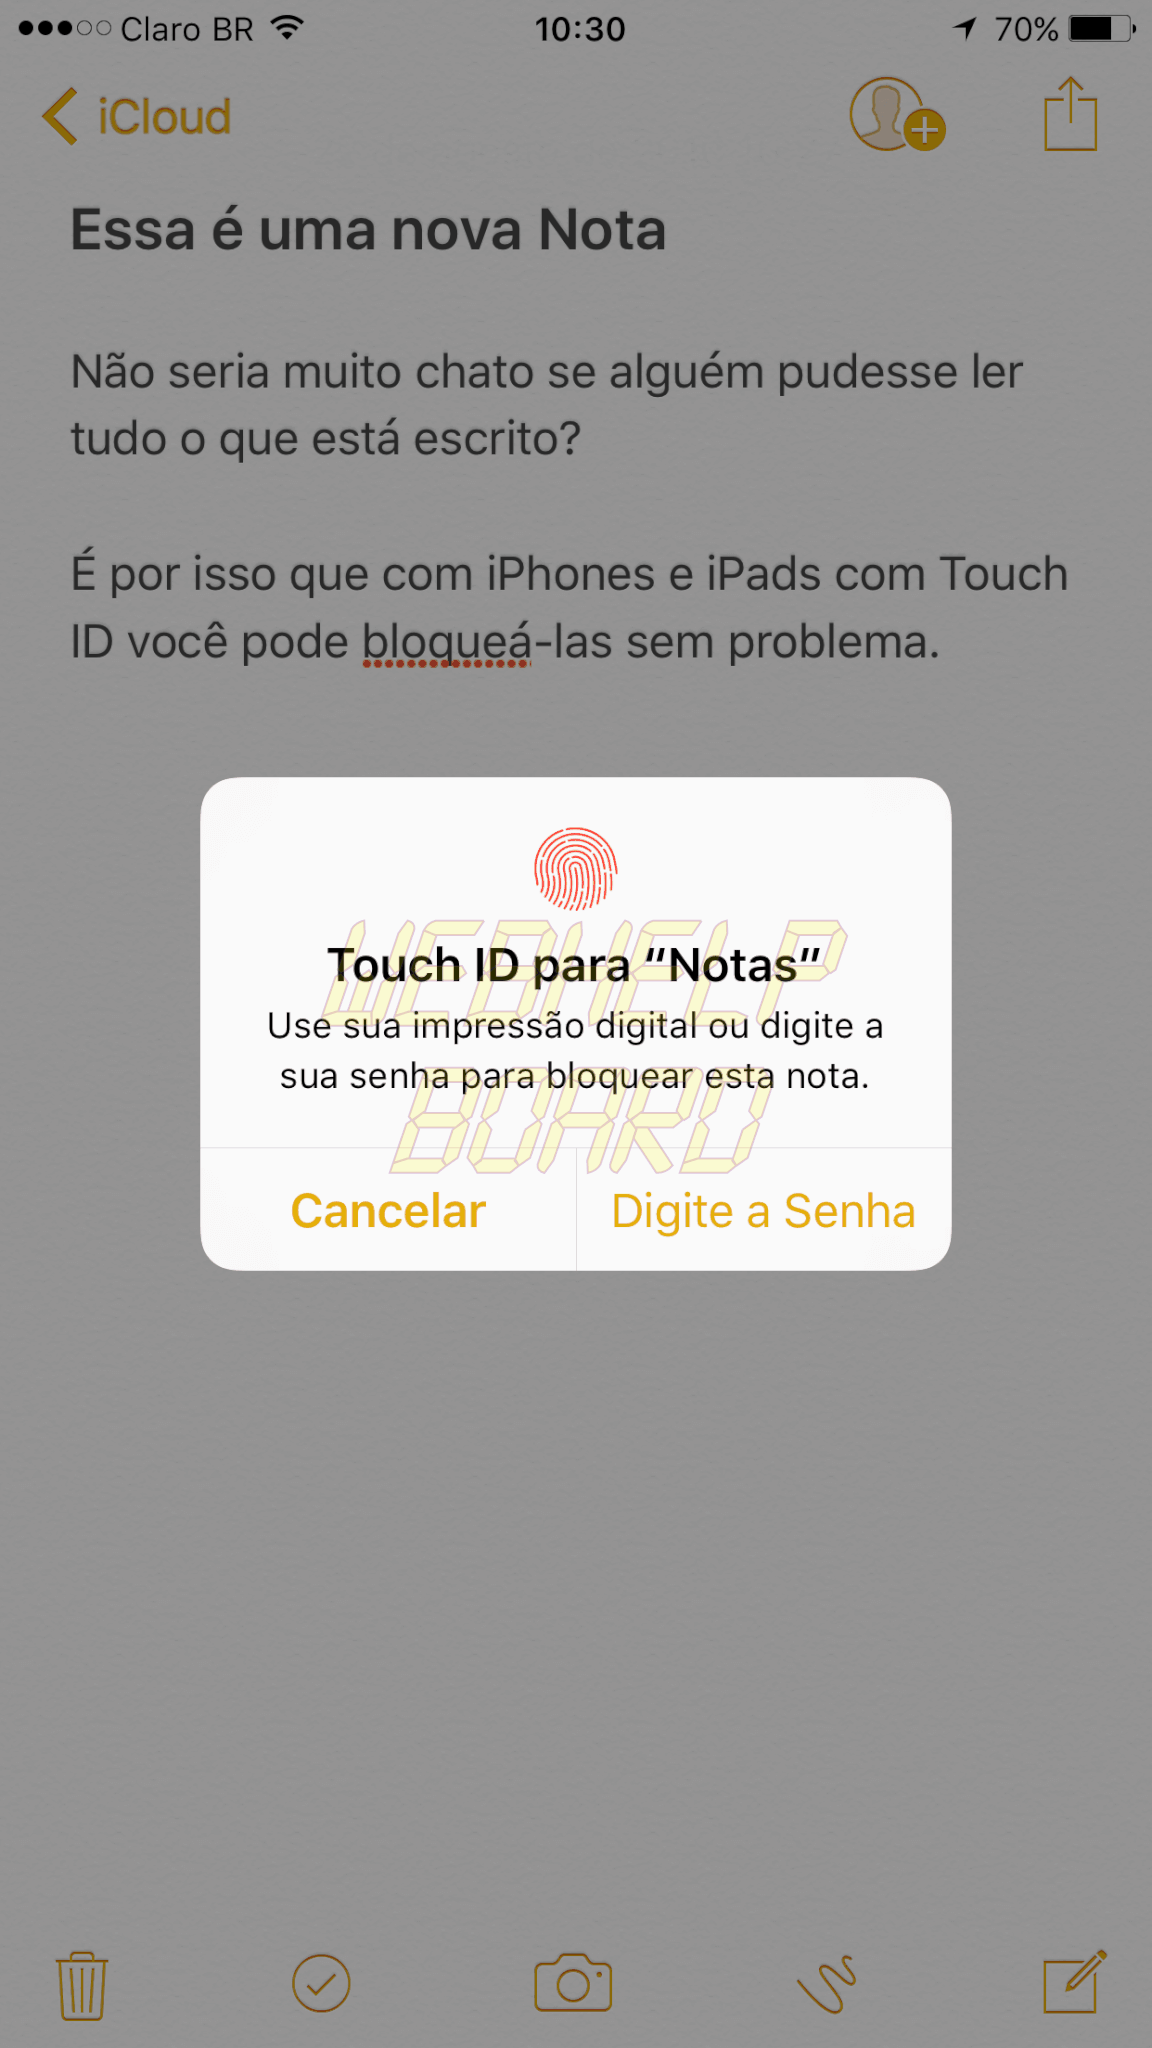 IMG 0784 - Tutorial: Como bloquear uma nota no iPhone ou iPad